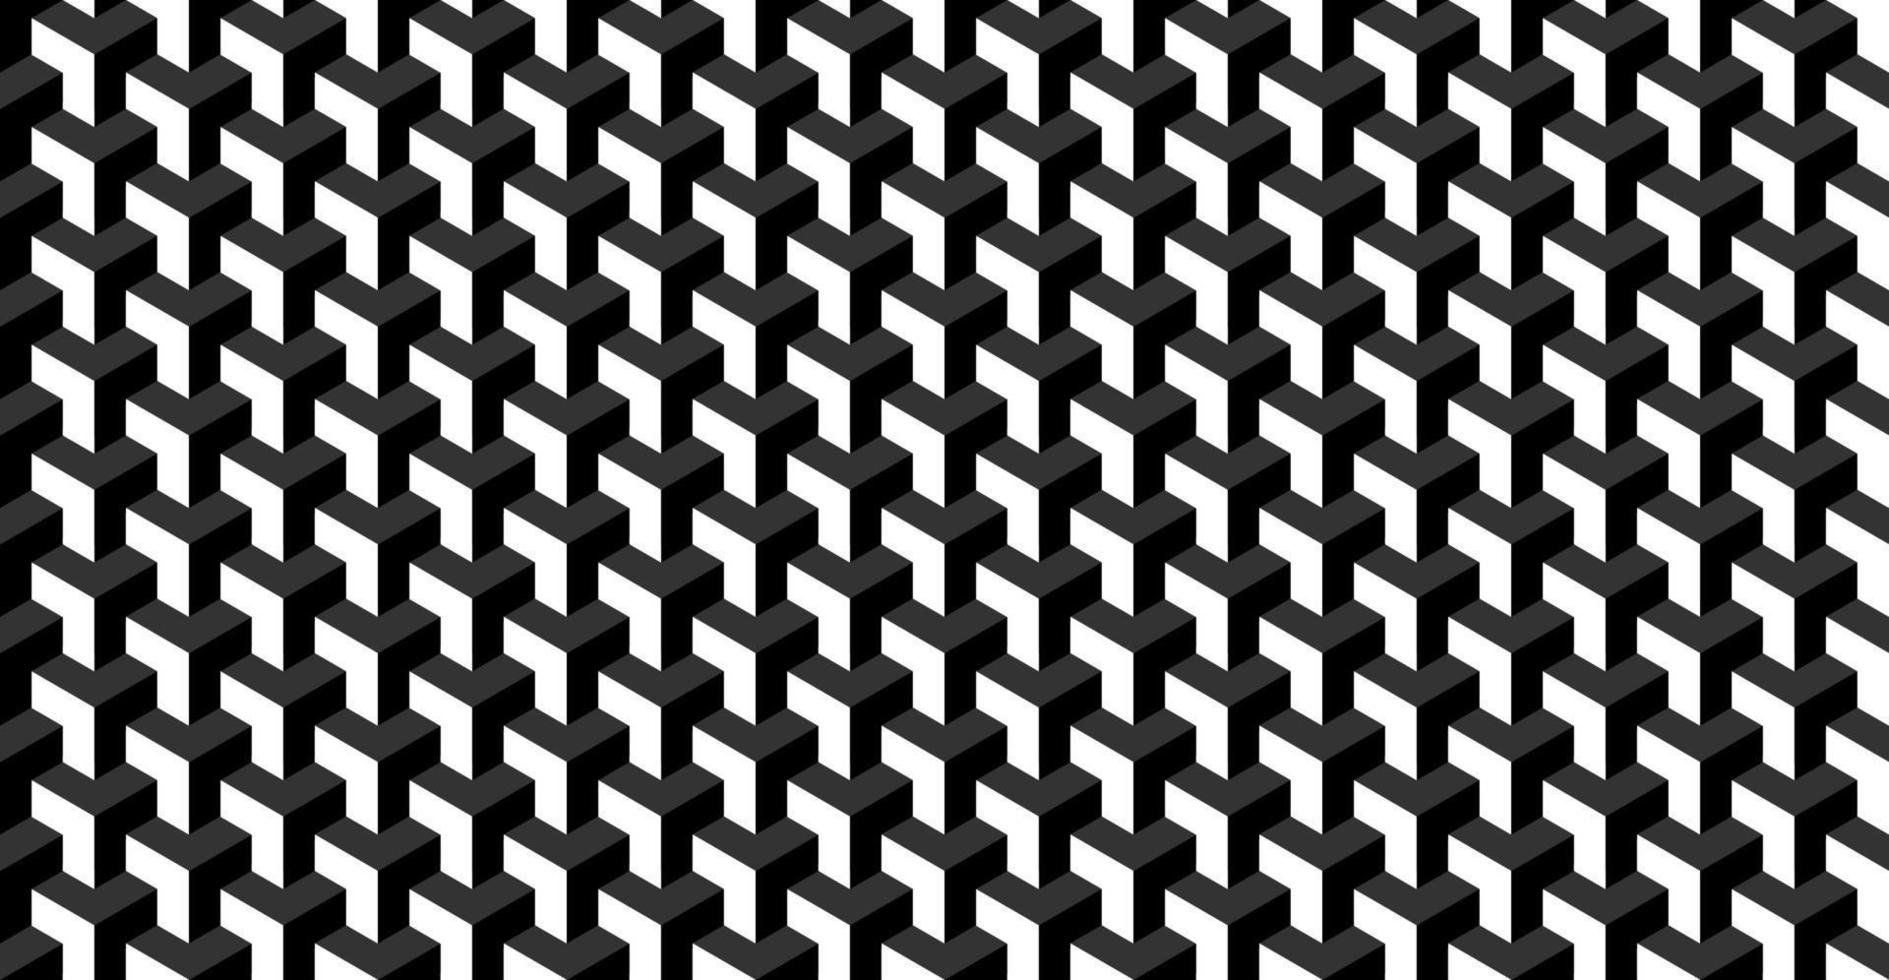 patrón geométrico transparente blanco y negro vector